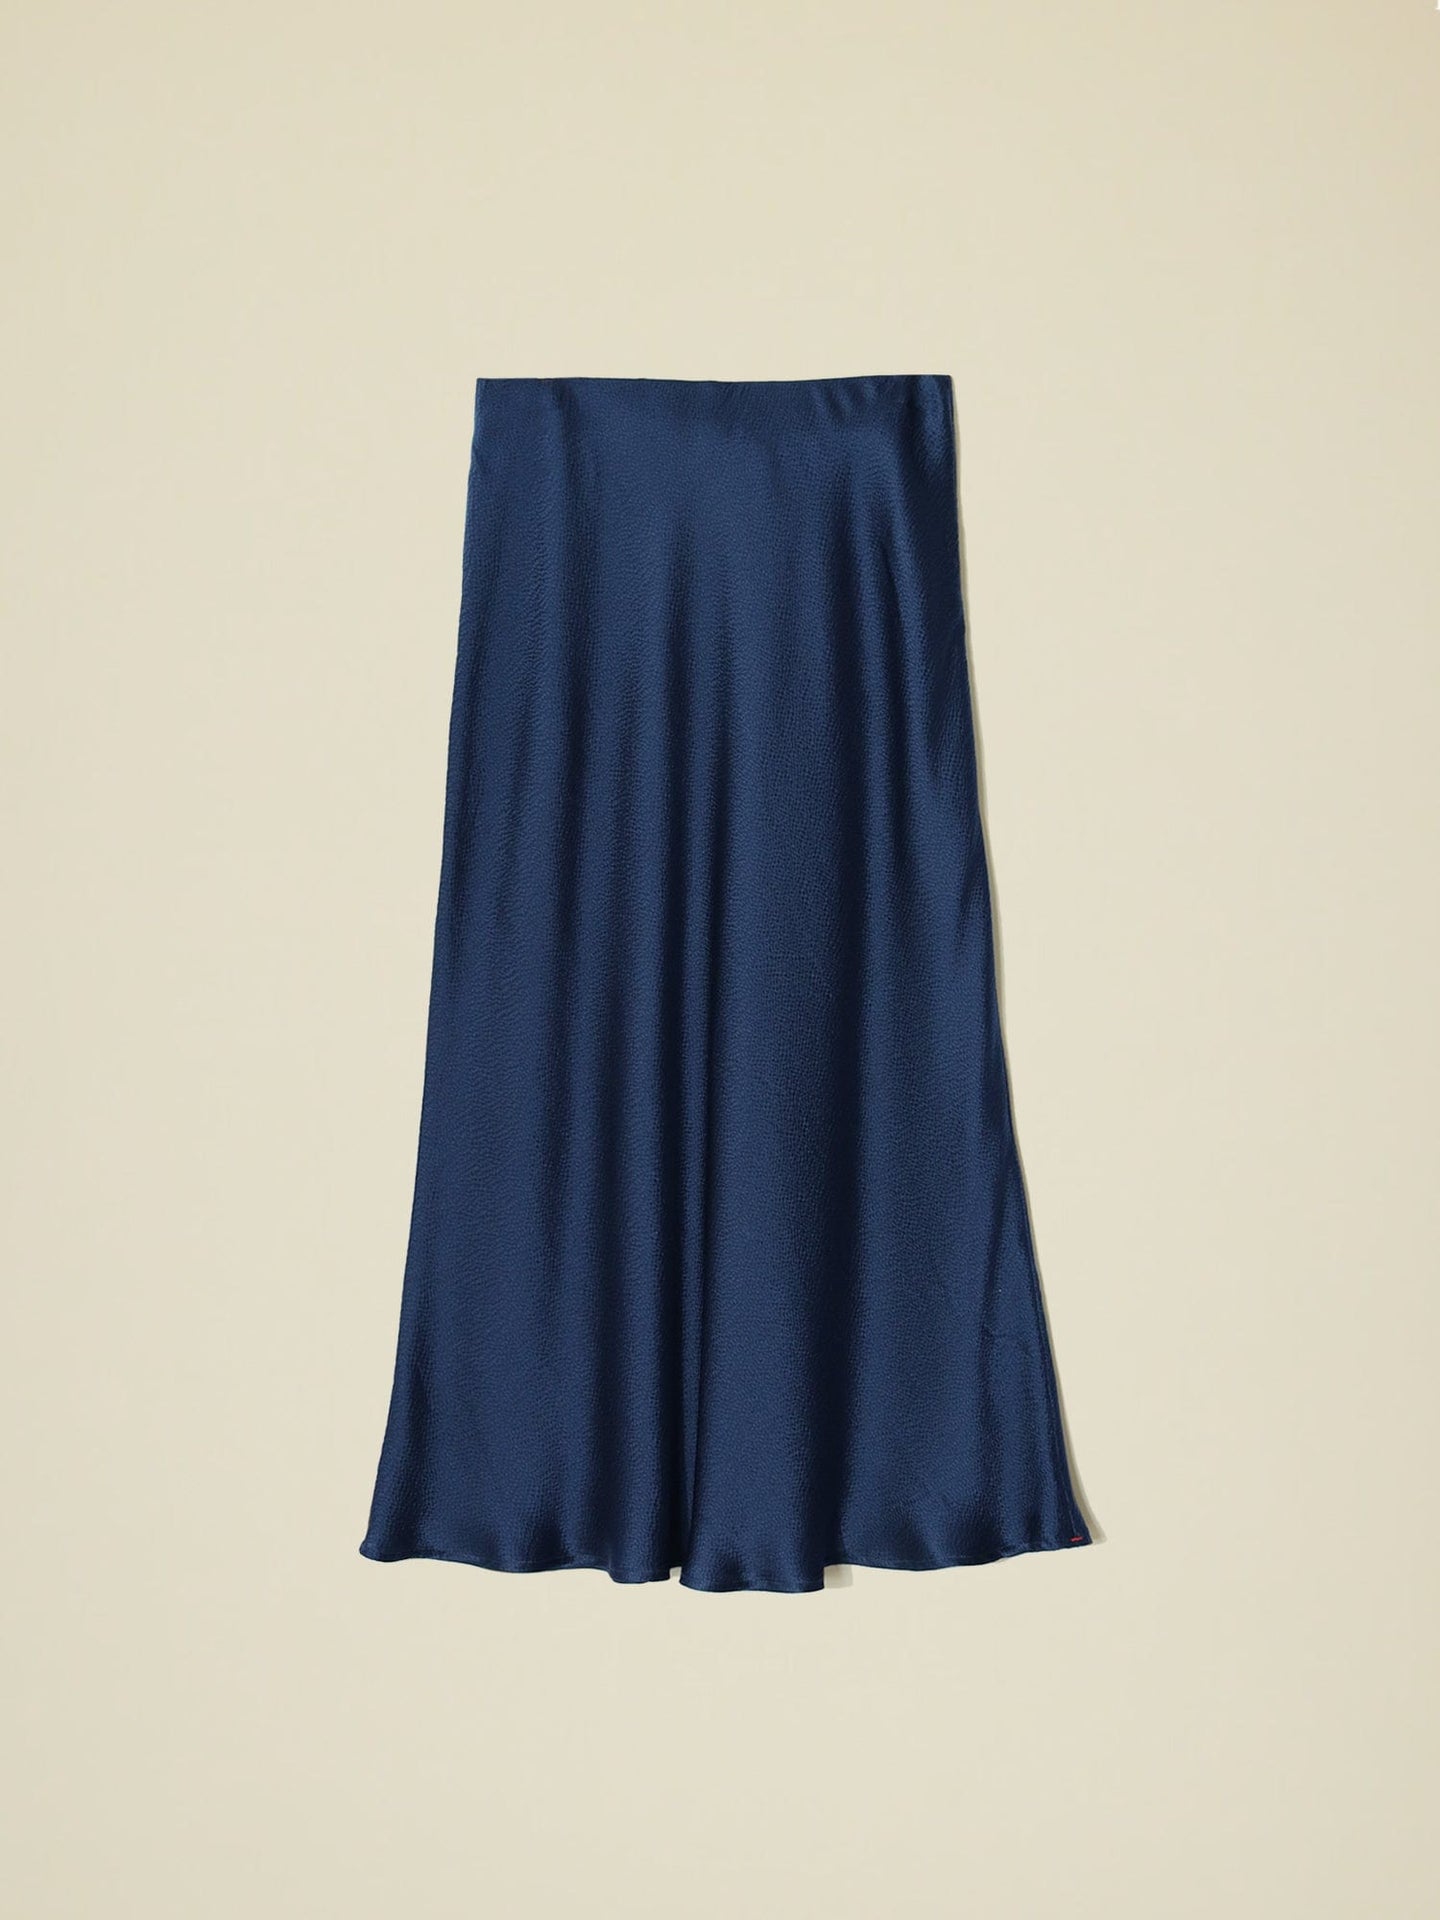 Xirena Skirt Star Sapphire Audrina Skirt